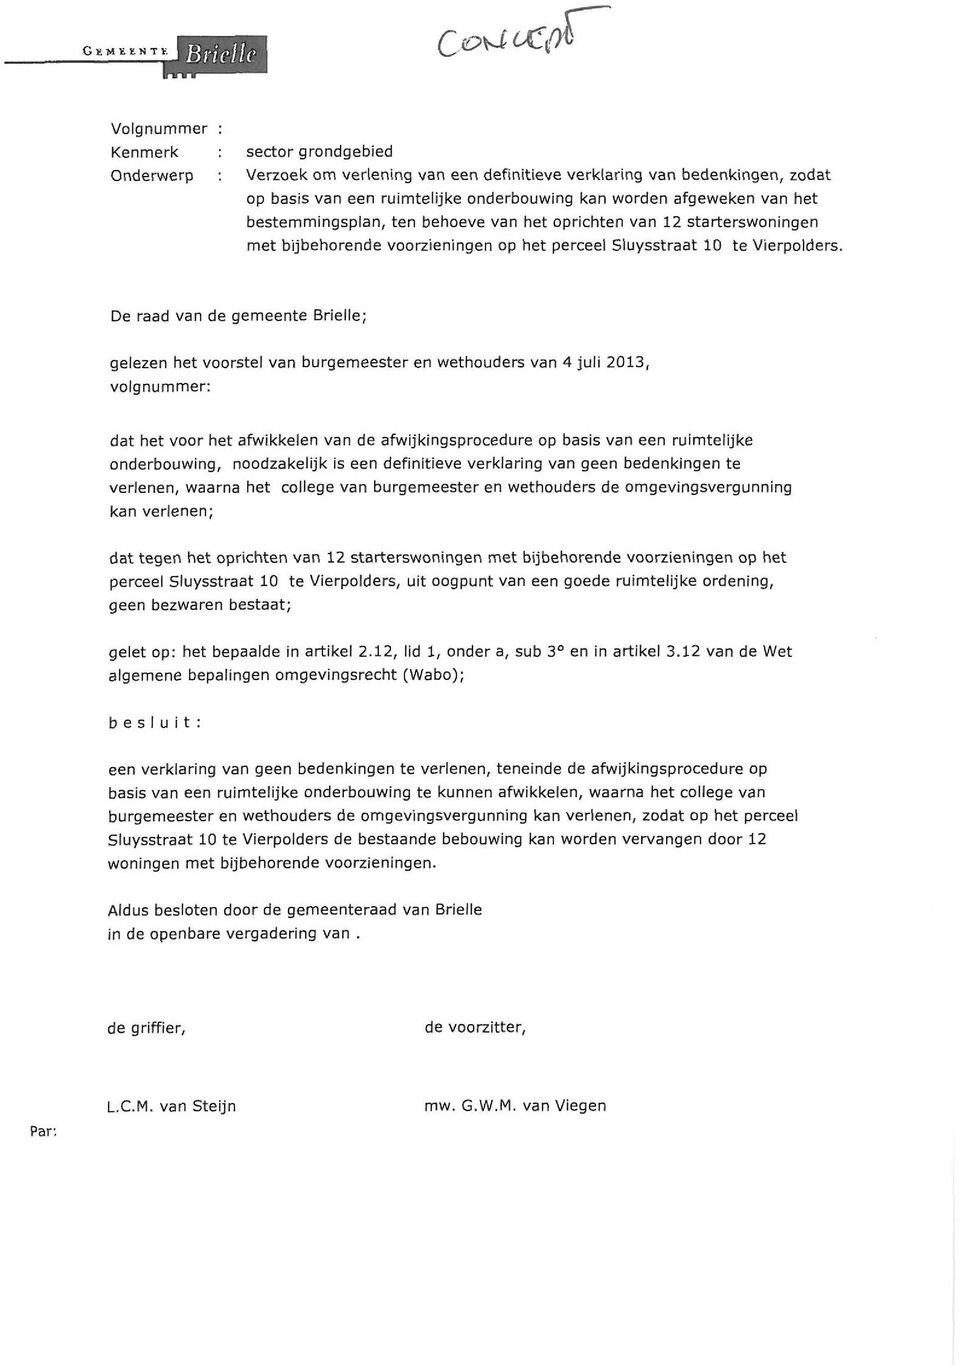 e raad van de gemeente Brielle; gelezen het voorstel van burgemeester en wethouders van 4 juli 2013, volgnummer: dat het voor het afwikkelen van de afwijkingsprocedure op basis van een ruimtelijke